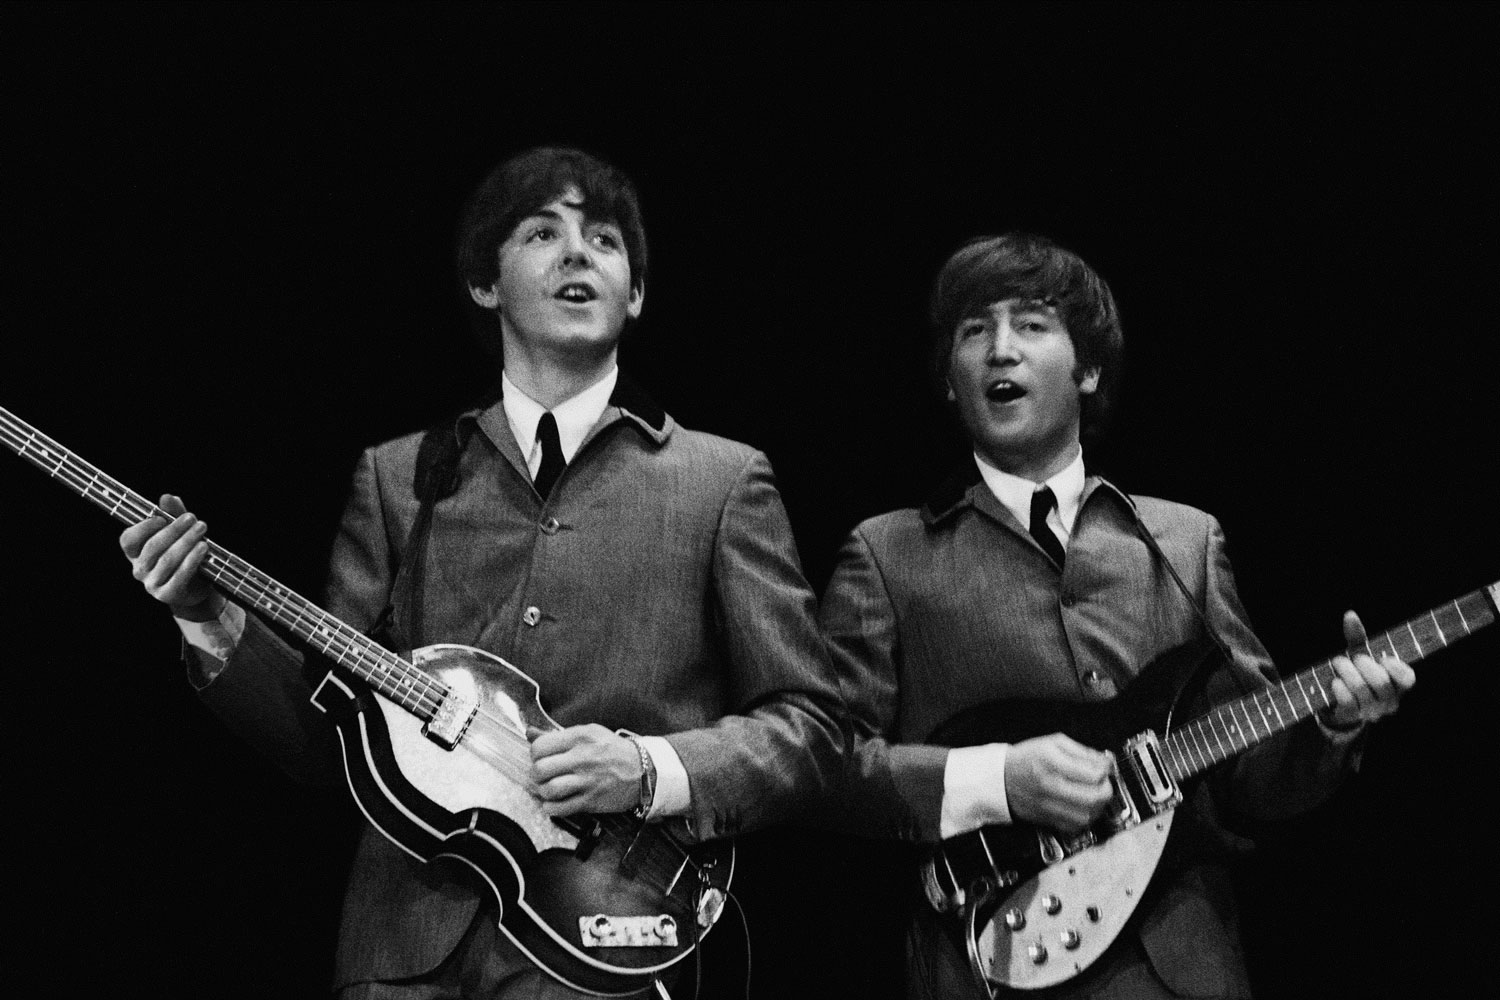 Los Beatles y la plaga sentimental